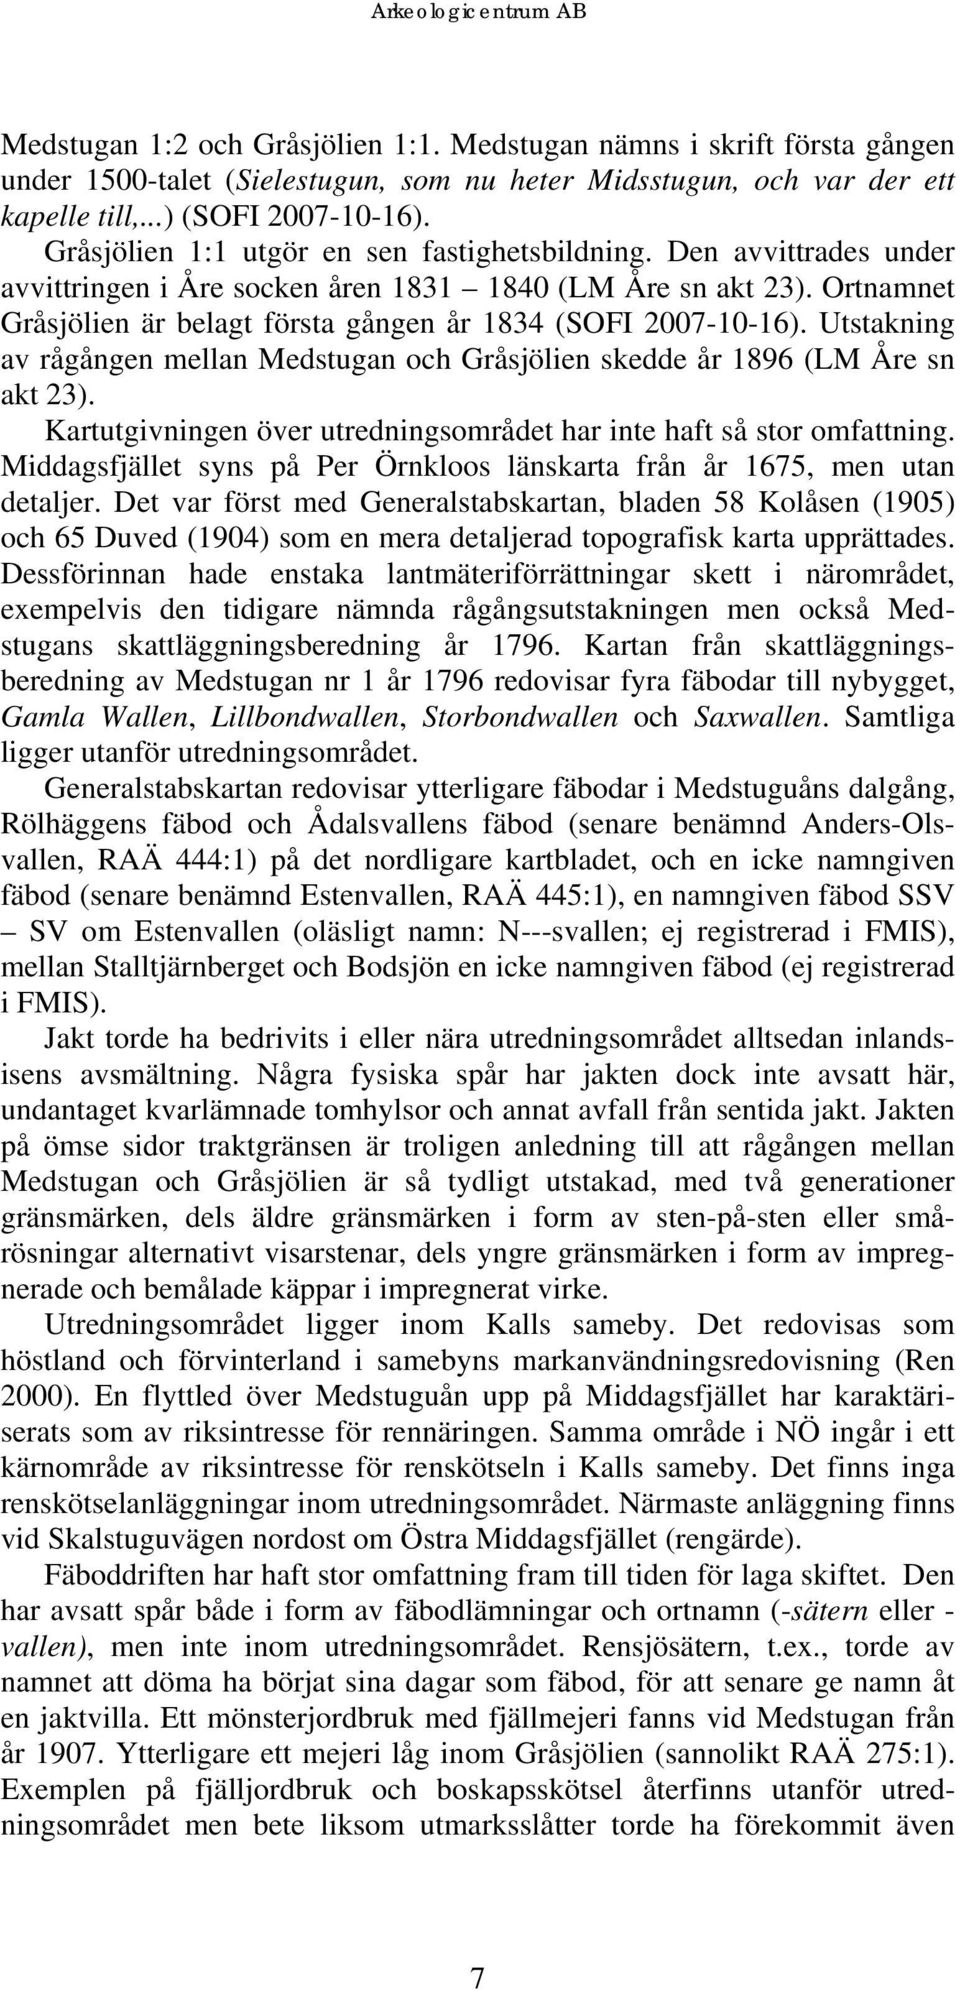 Ortnamnet Gråsjölien är belagt första gången år 1834 (SOFI 2007-10-16). Utstakning av rågången mellan Medstugan och Gråsjölien skedde år 1896 (LM Åre sn akt 23).